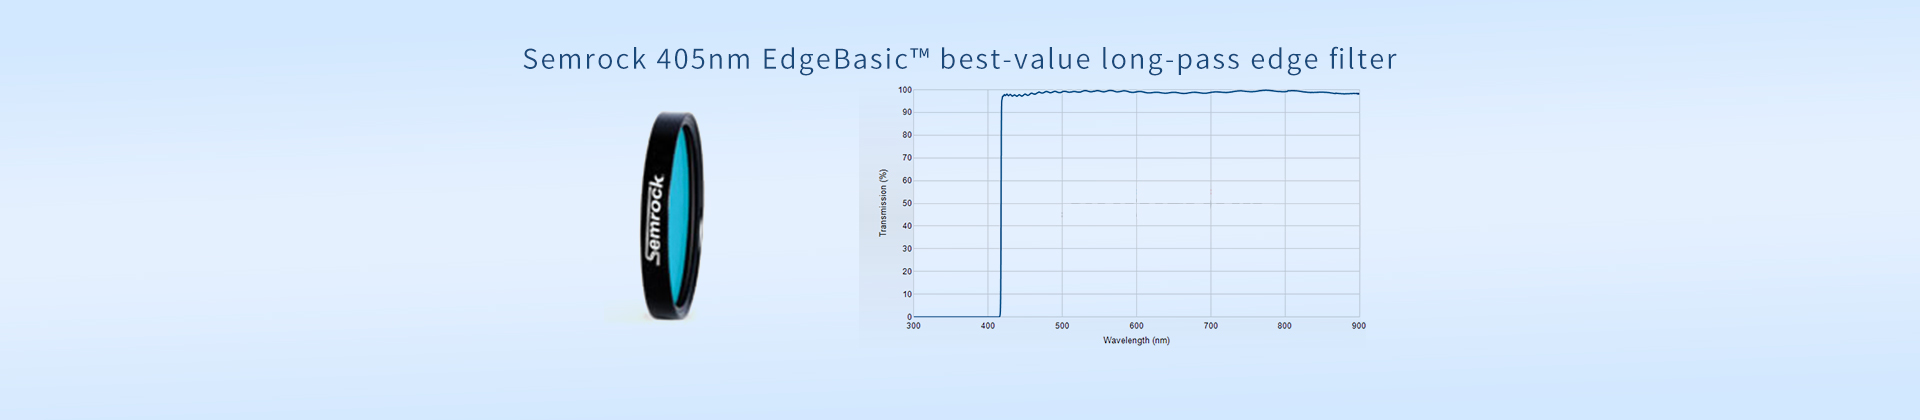 Semrock 405nm EdgeBasic™ best-value long-pass edge filter